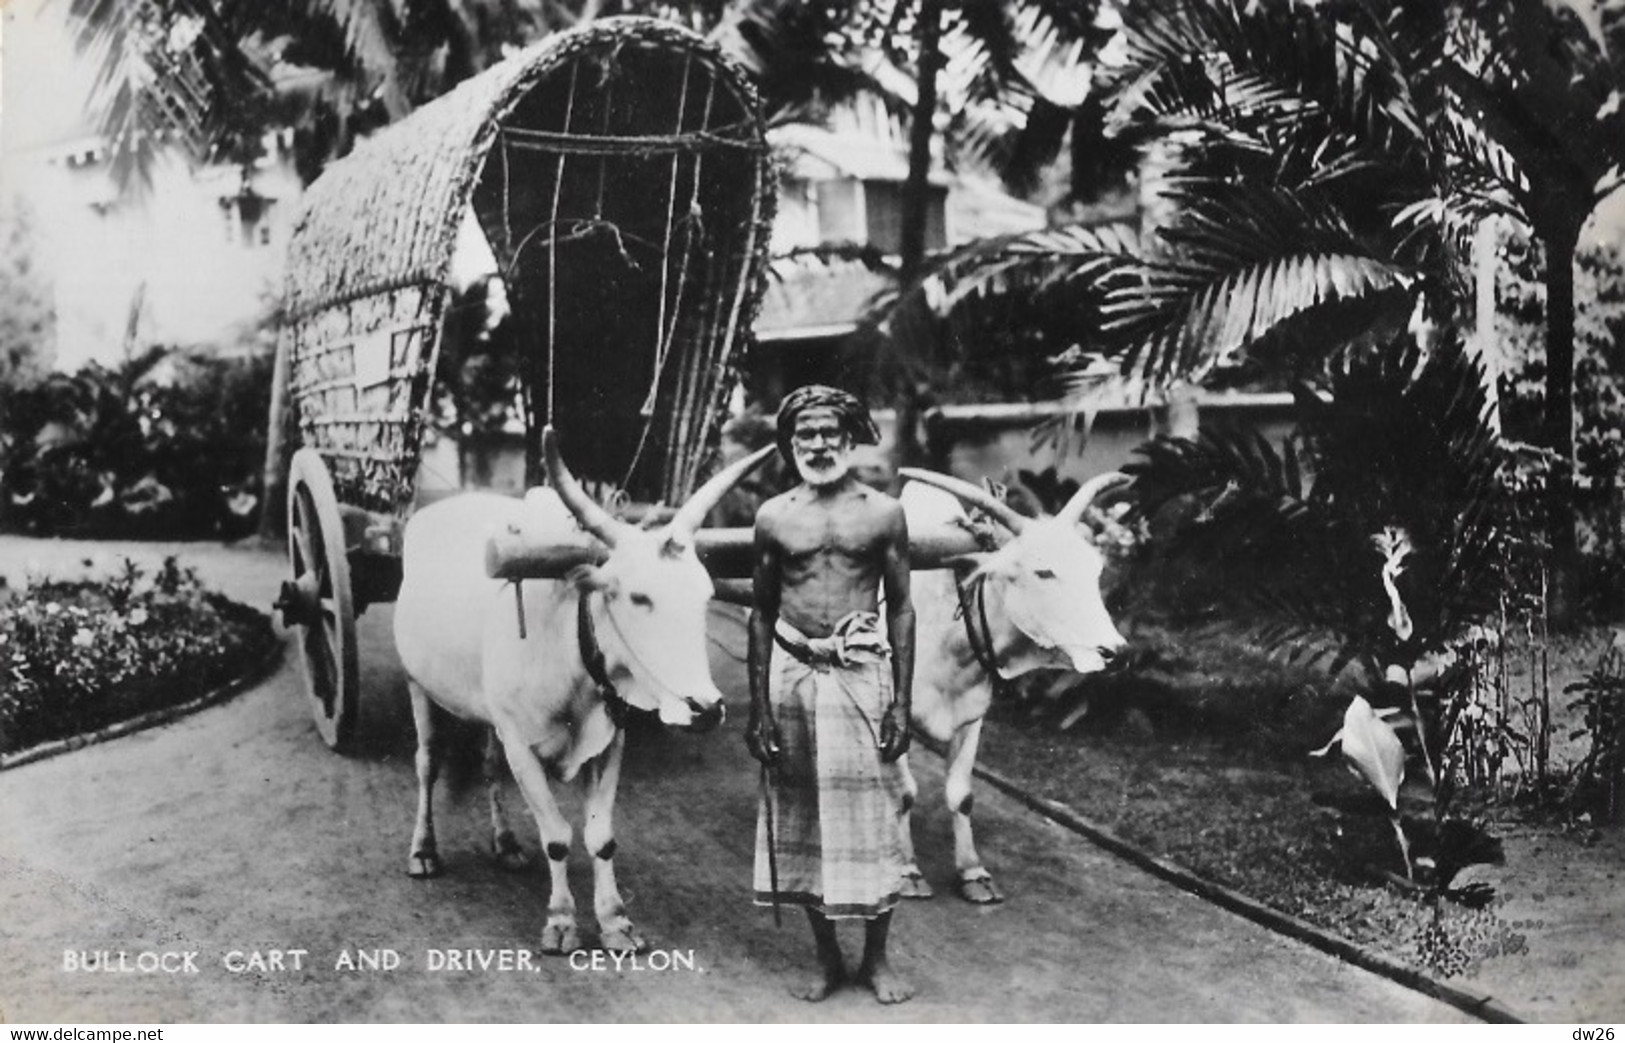 Ceylan: Bullock Cart And Driver (char à Boeufs) Plâté Ltd, Ceylon - Carte N° 68 Non Circulée - Asie